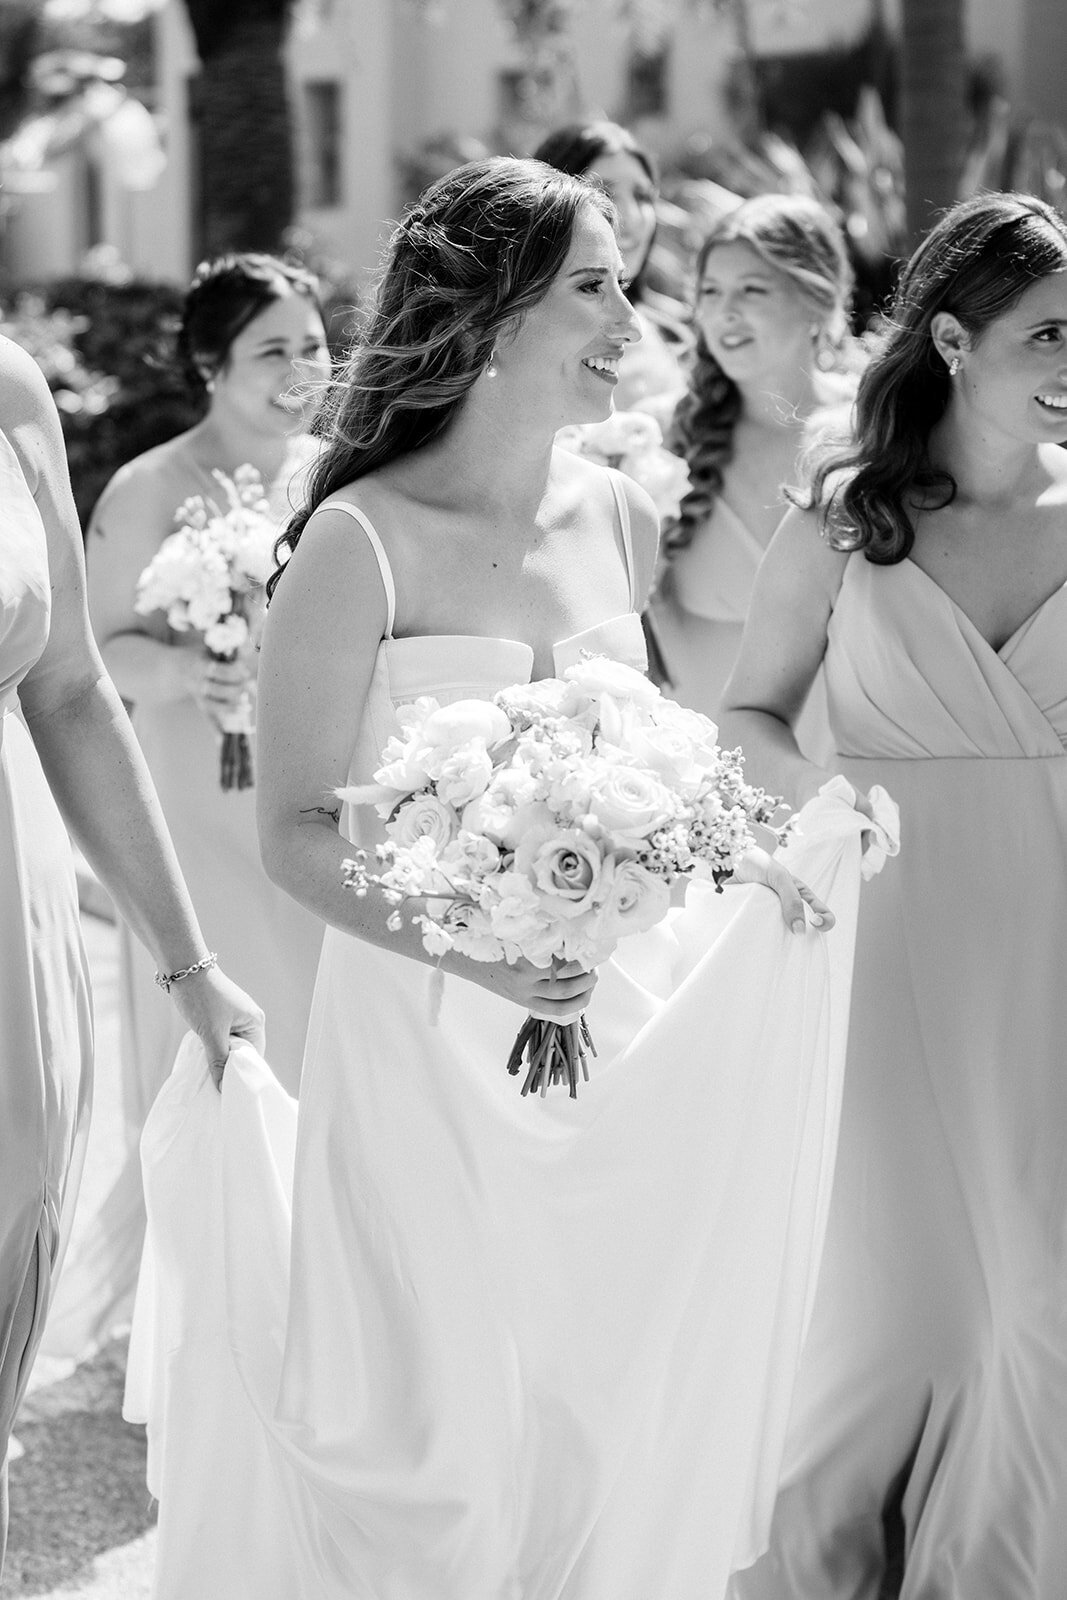 CORNELIA ZAISS PHOTOGRAPHY COURTNEY + ANDREW WEDDING 0526_websize